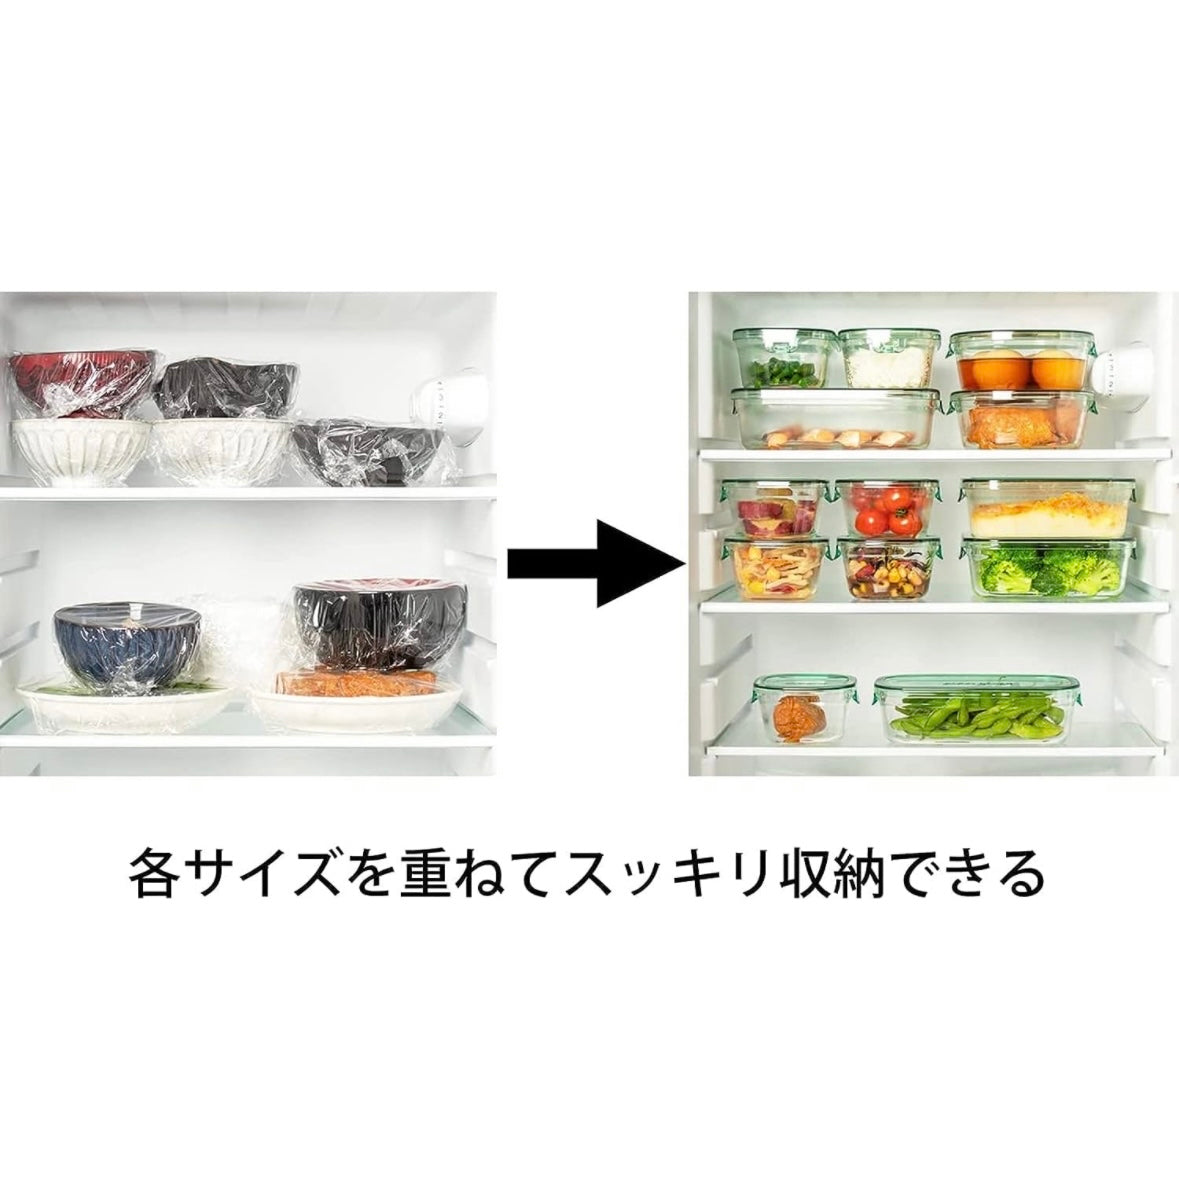 iwaki イワキ 耐熱ガラス 保存容器 システムセット・ミニ 4点セット クールグレー オリーブグリーン L(1.2L)×1個、M(500ml)×1個、SS(200ml)×2個 食洗機 電子レンジ オーブン